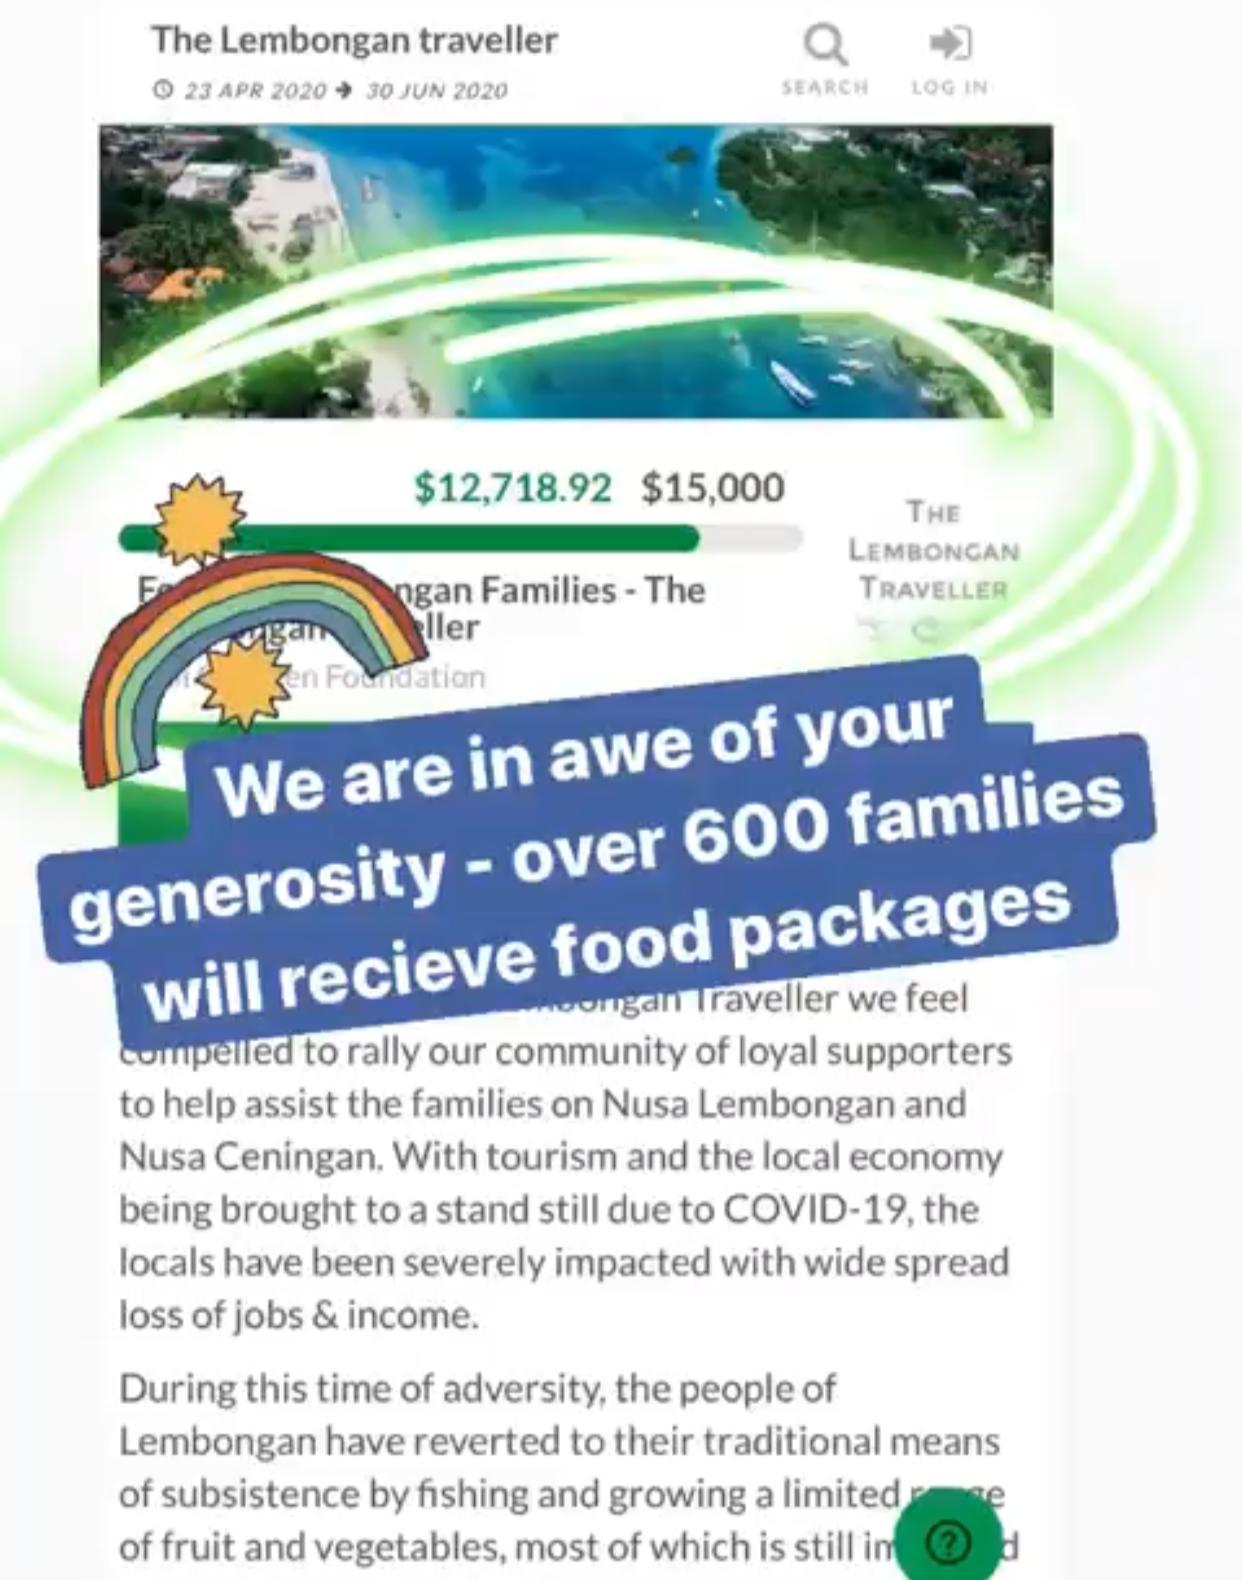 Food for Lembongan Families